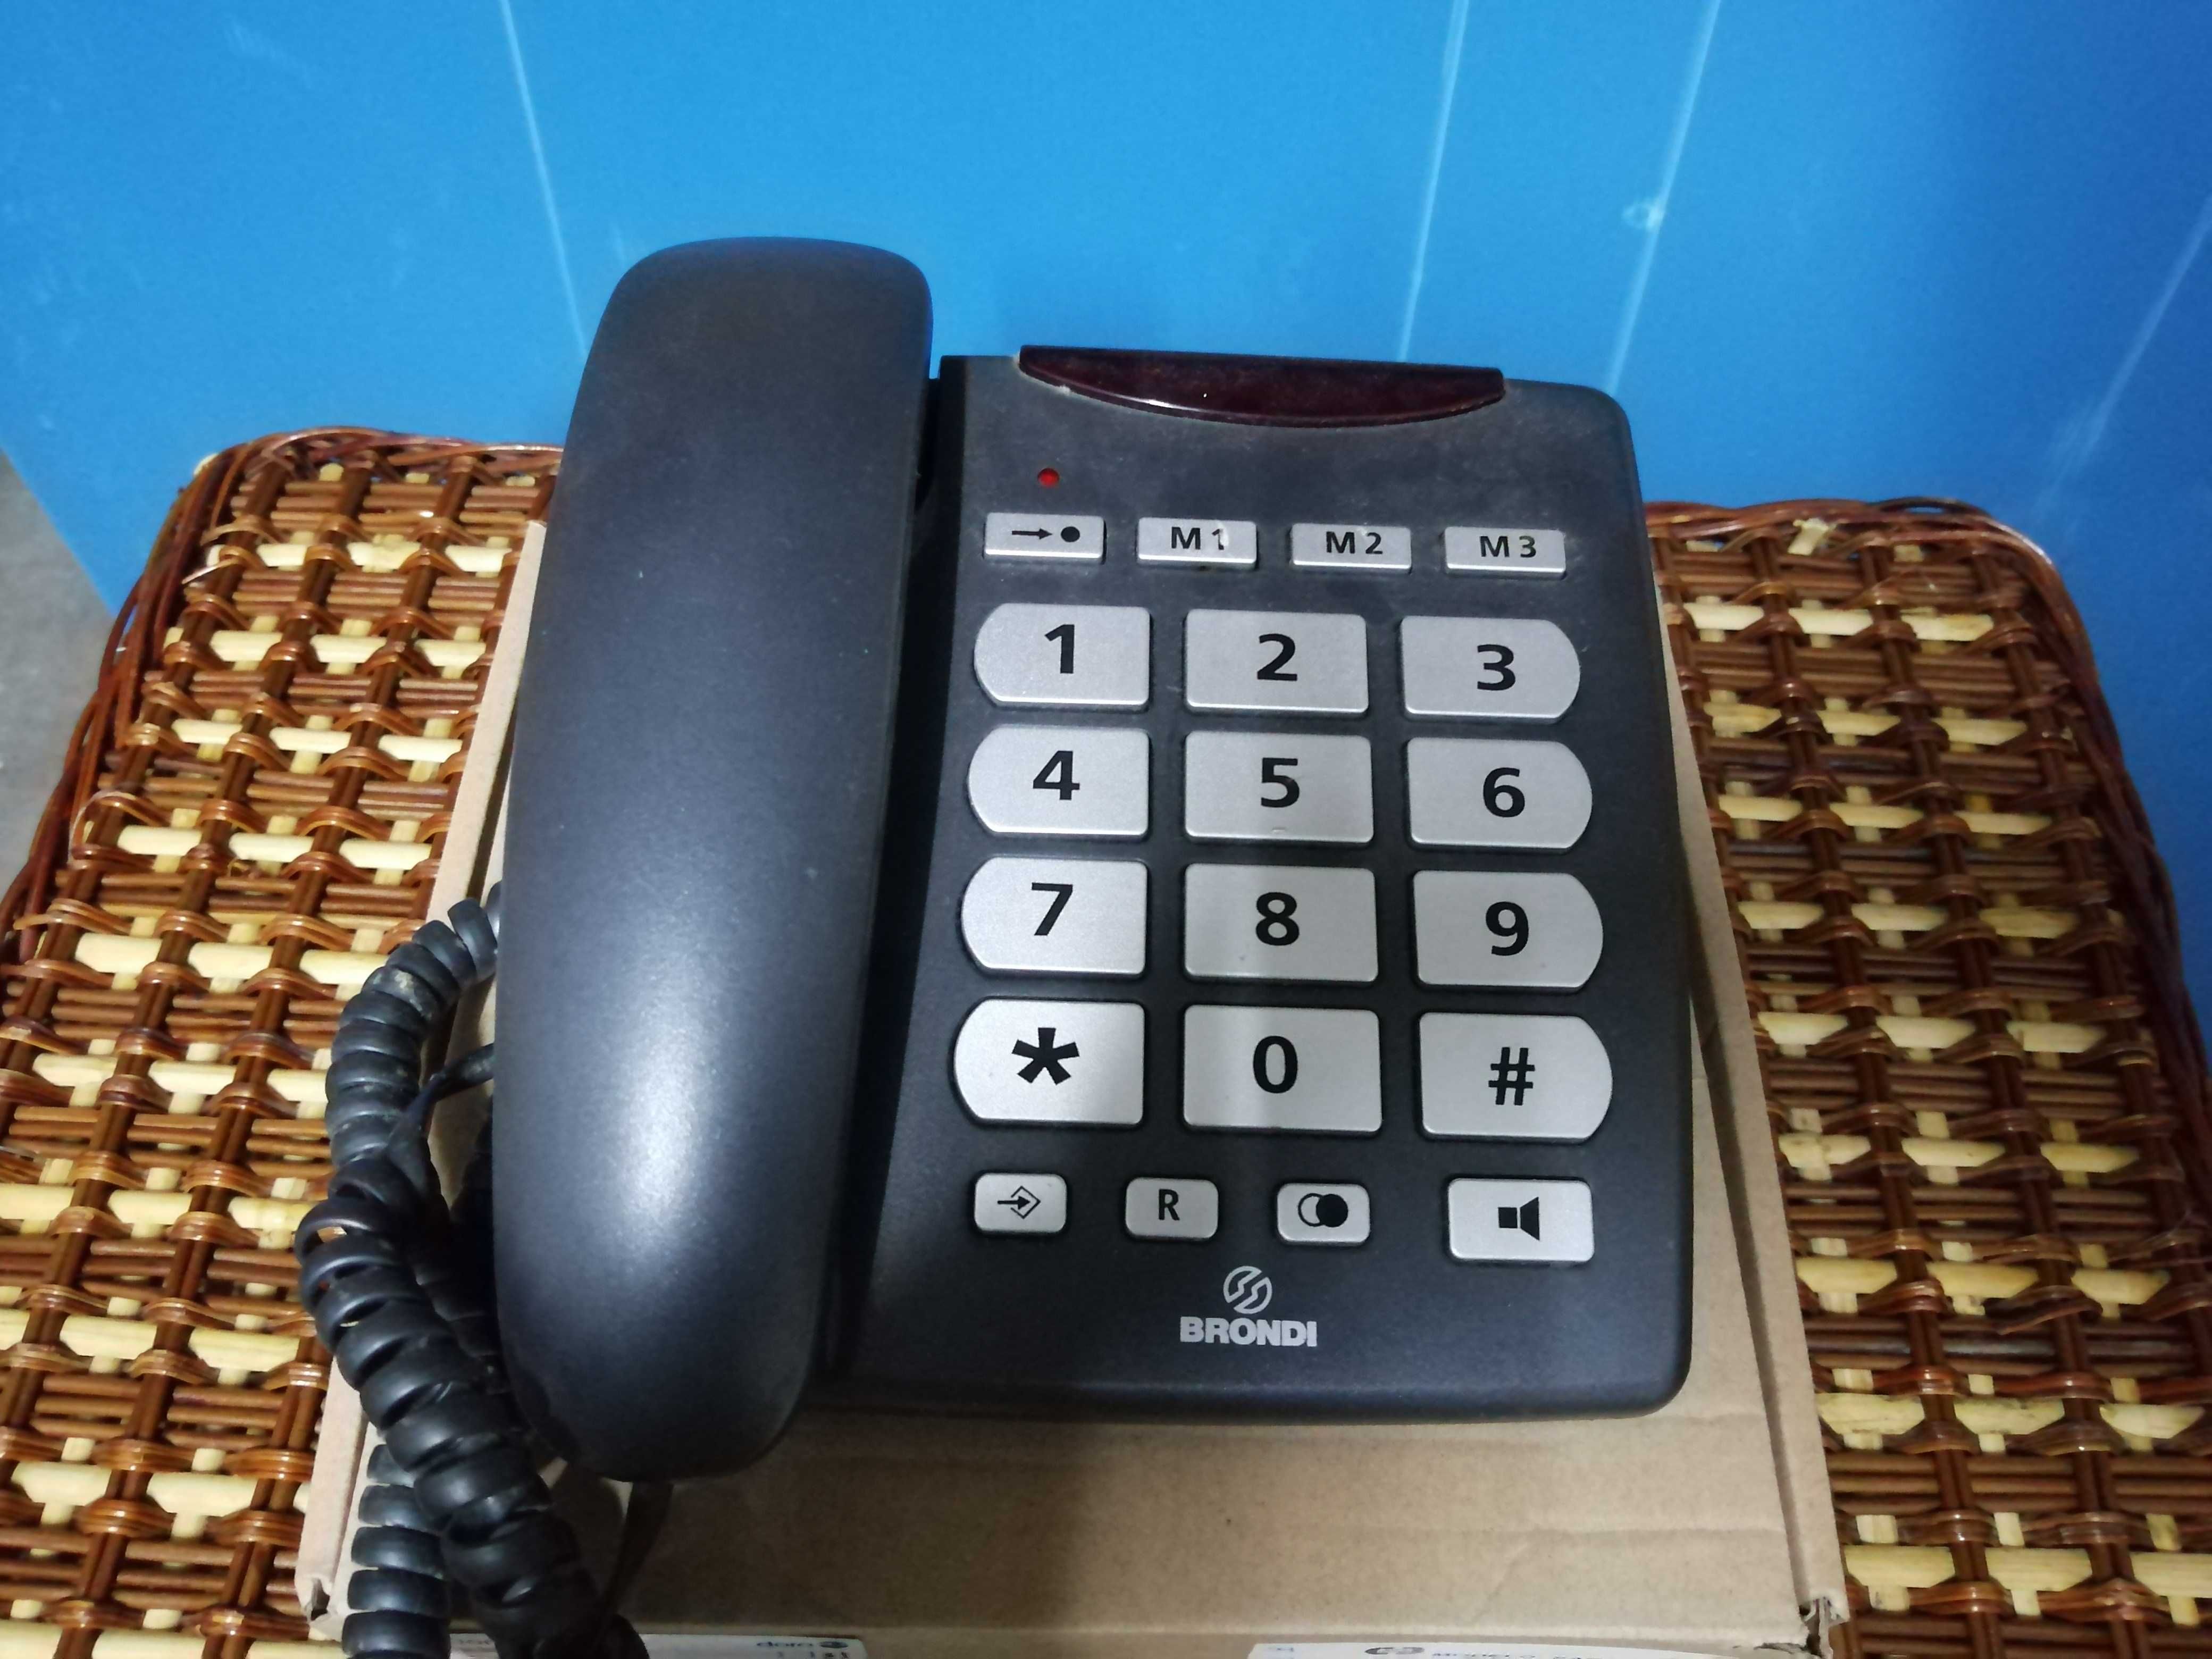 Telefone fixo com teclas grandes (muito útil para idosos)